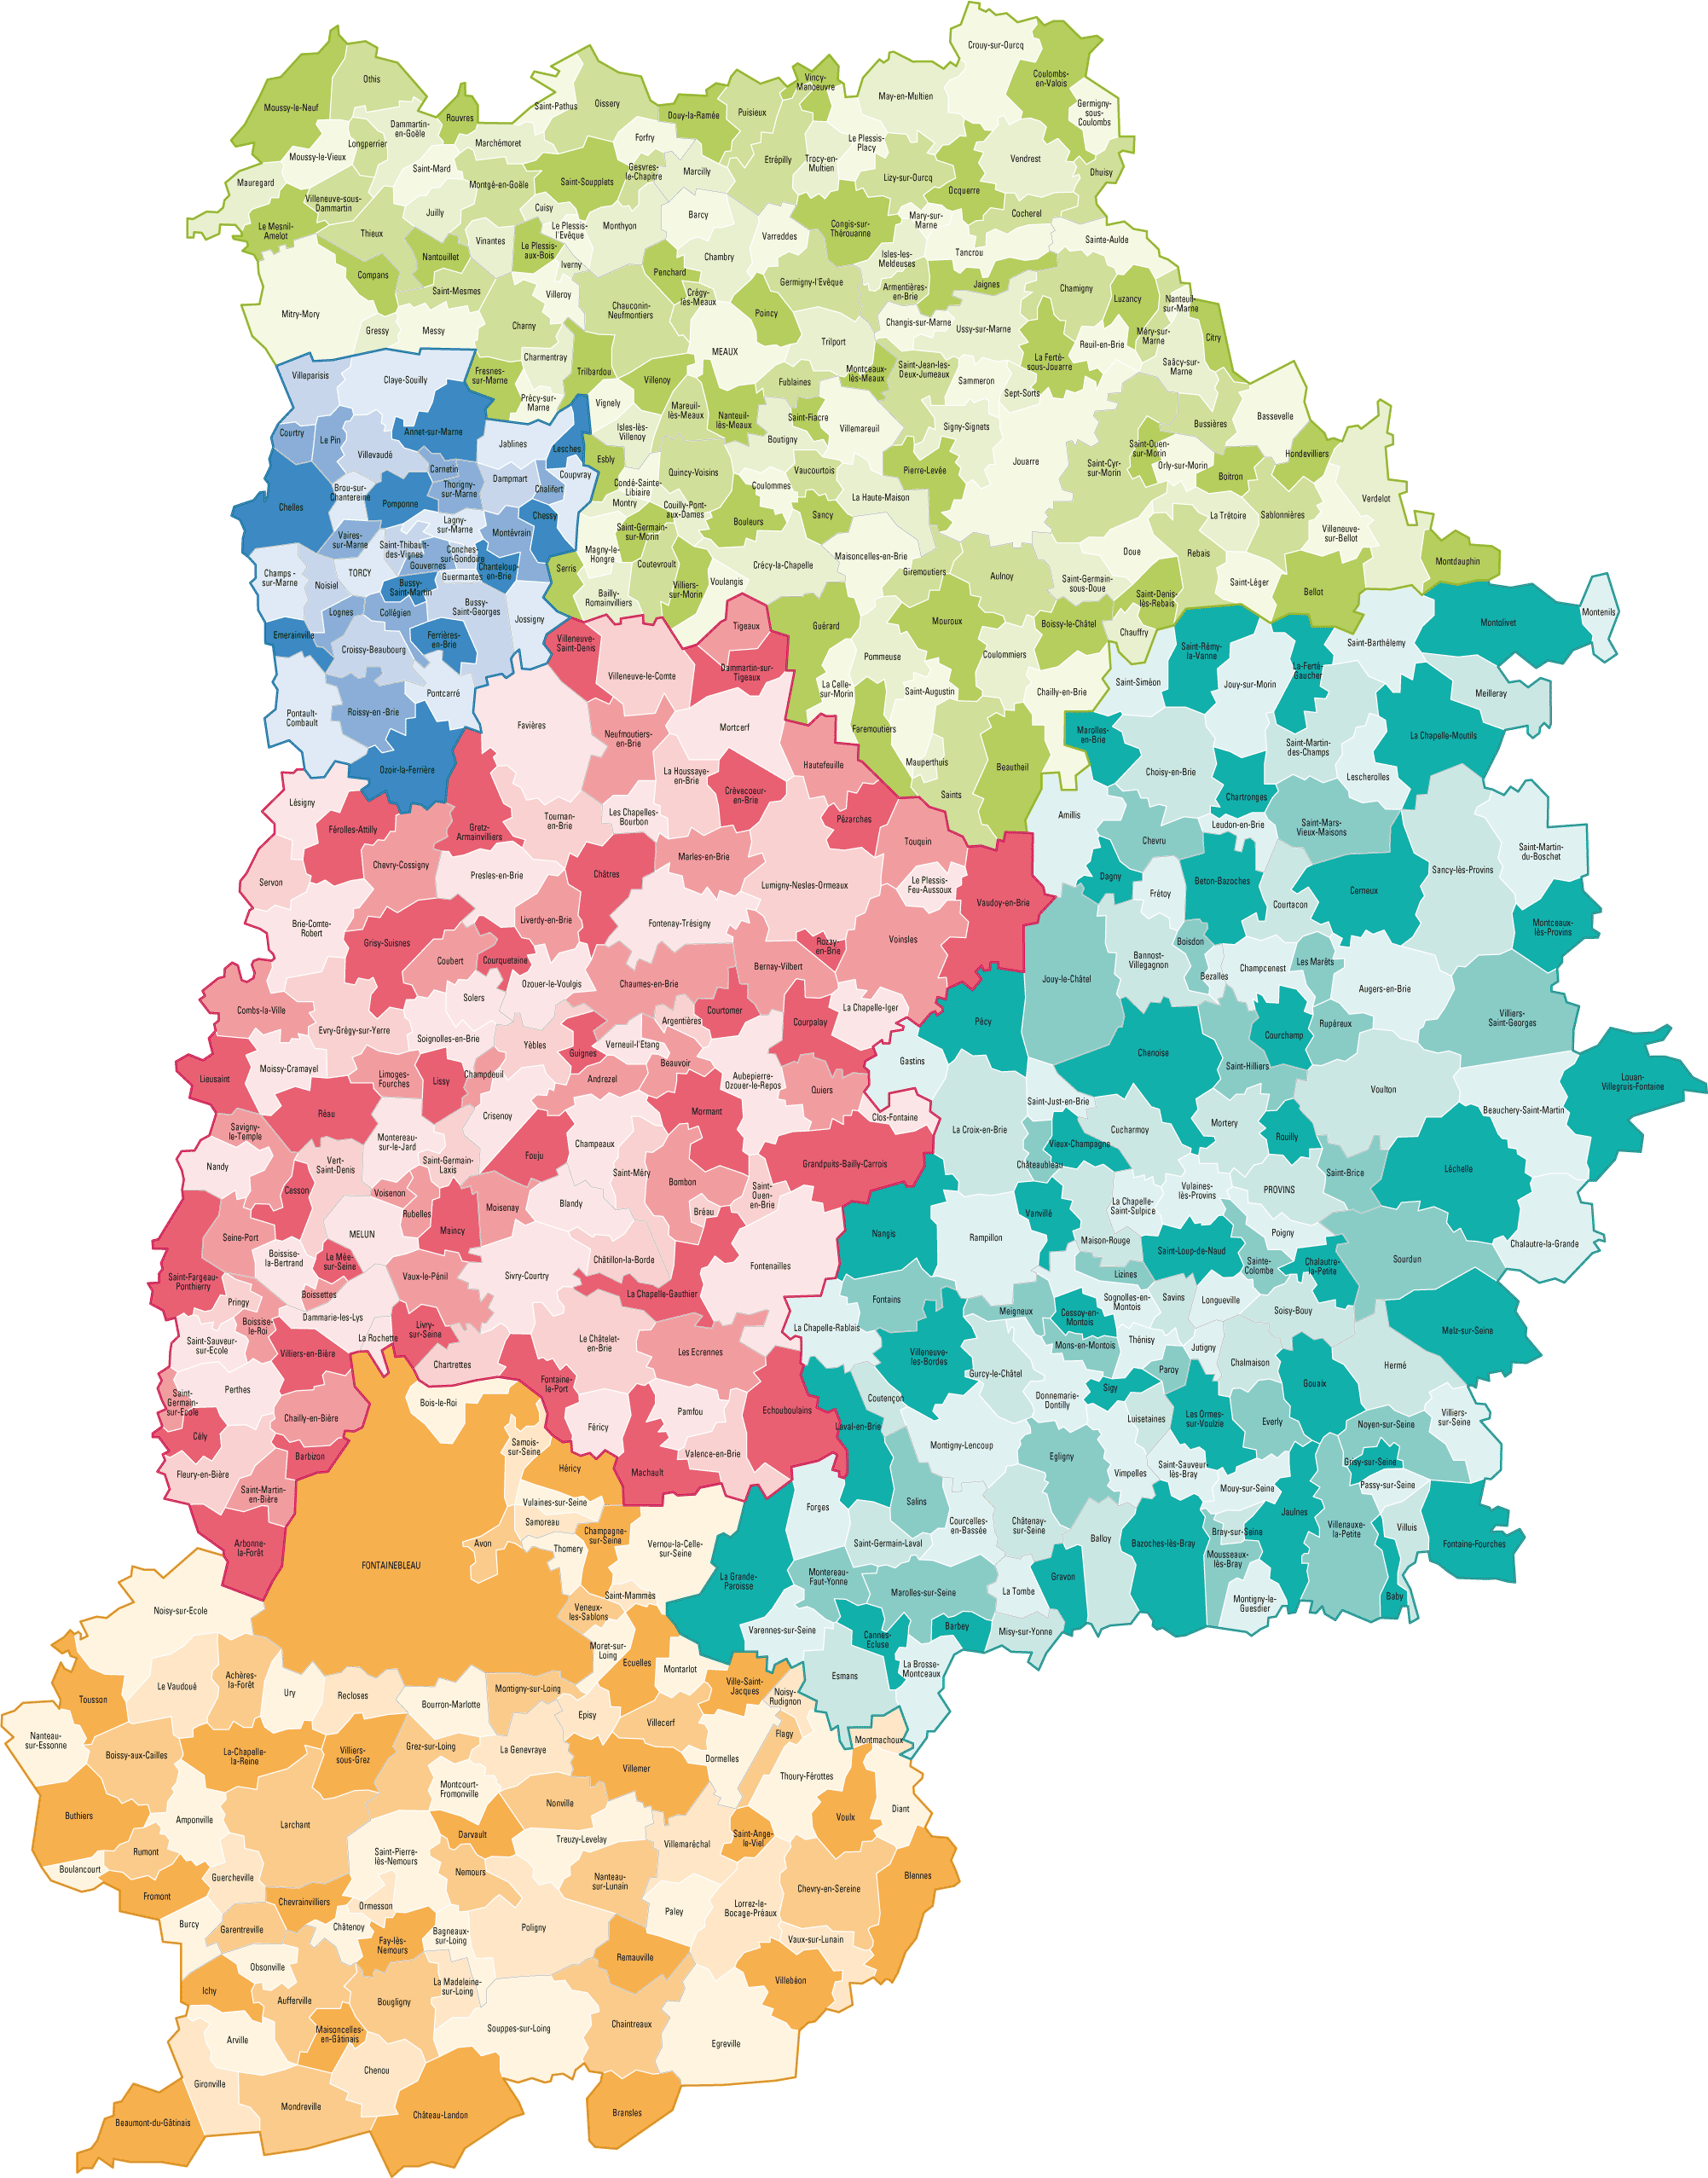 Département 77 : la SEINE-ET-MARNE ➔ carte, région, localisation et  départements voisins.